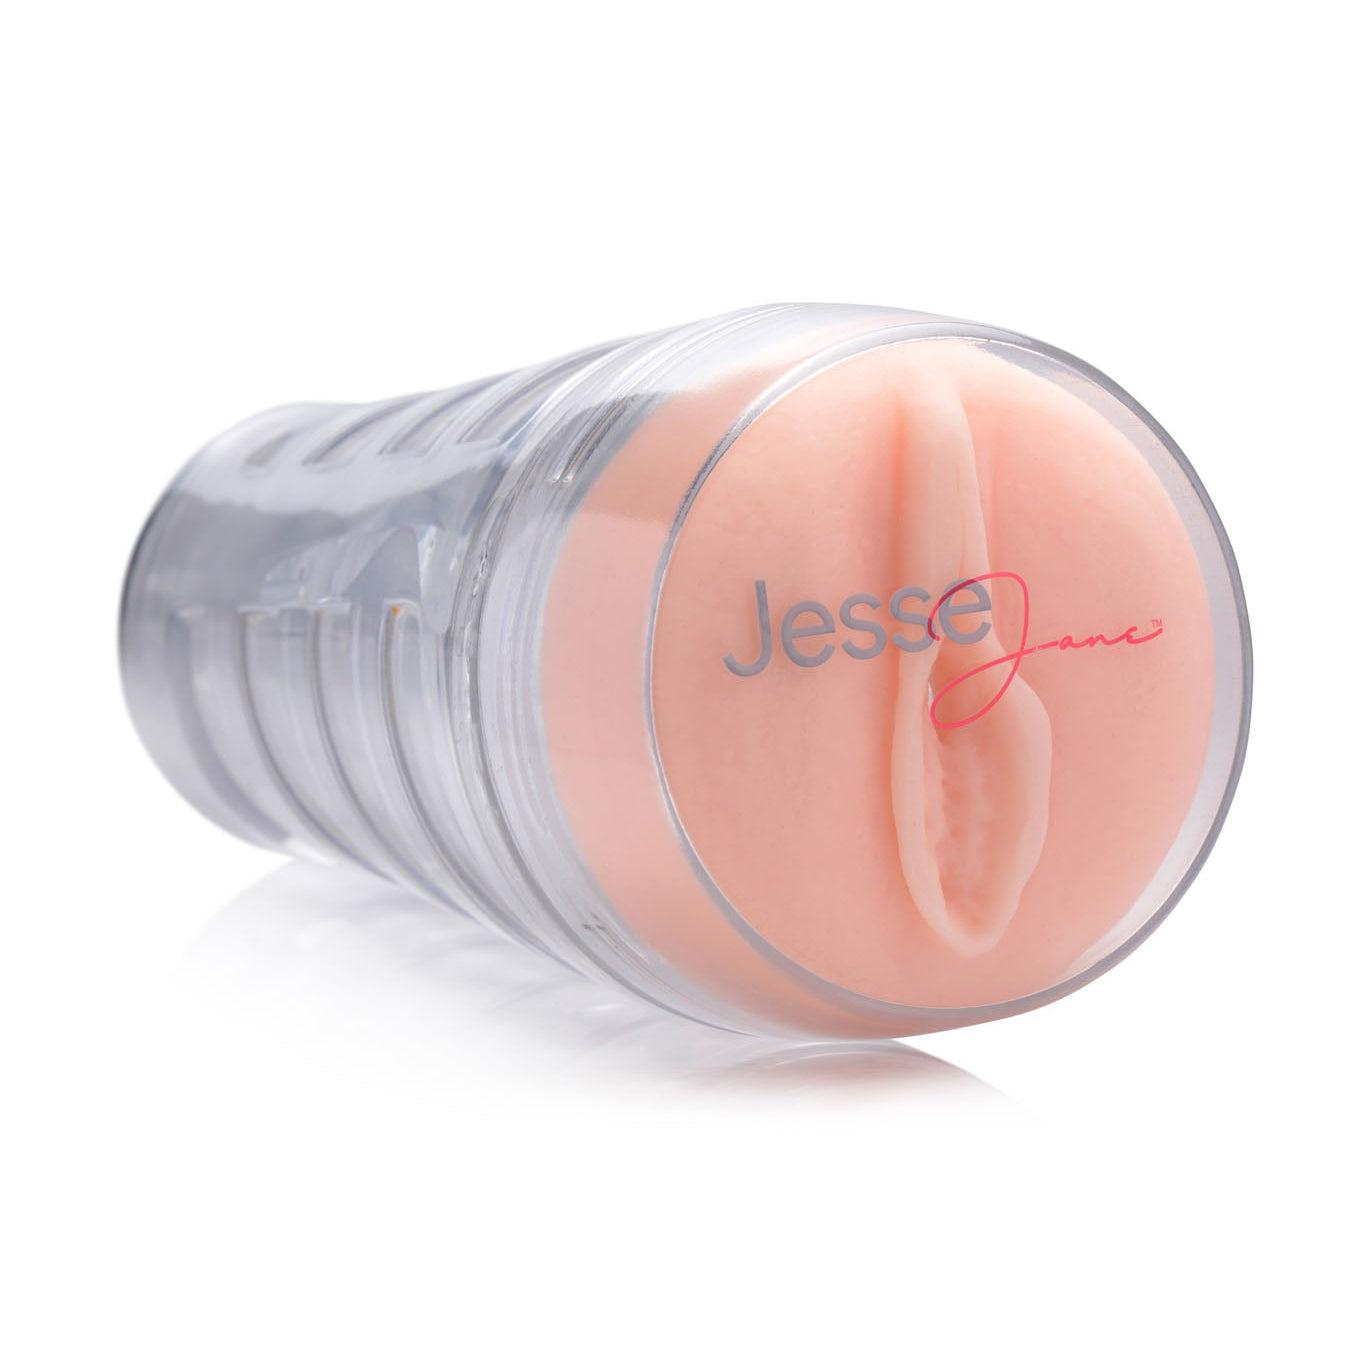 Jesse Jane Deluxe Pussy Stroker